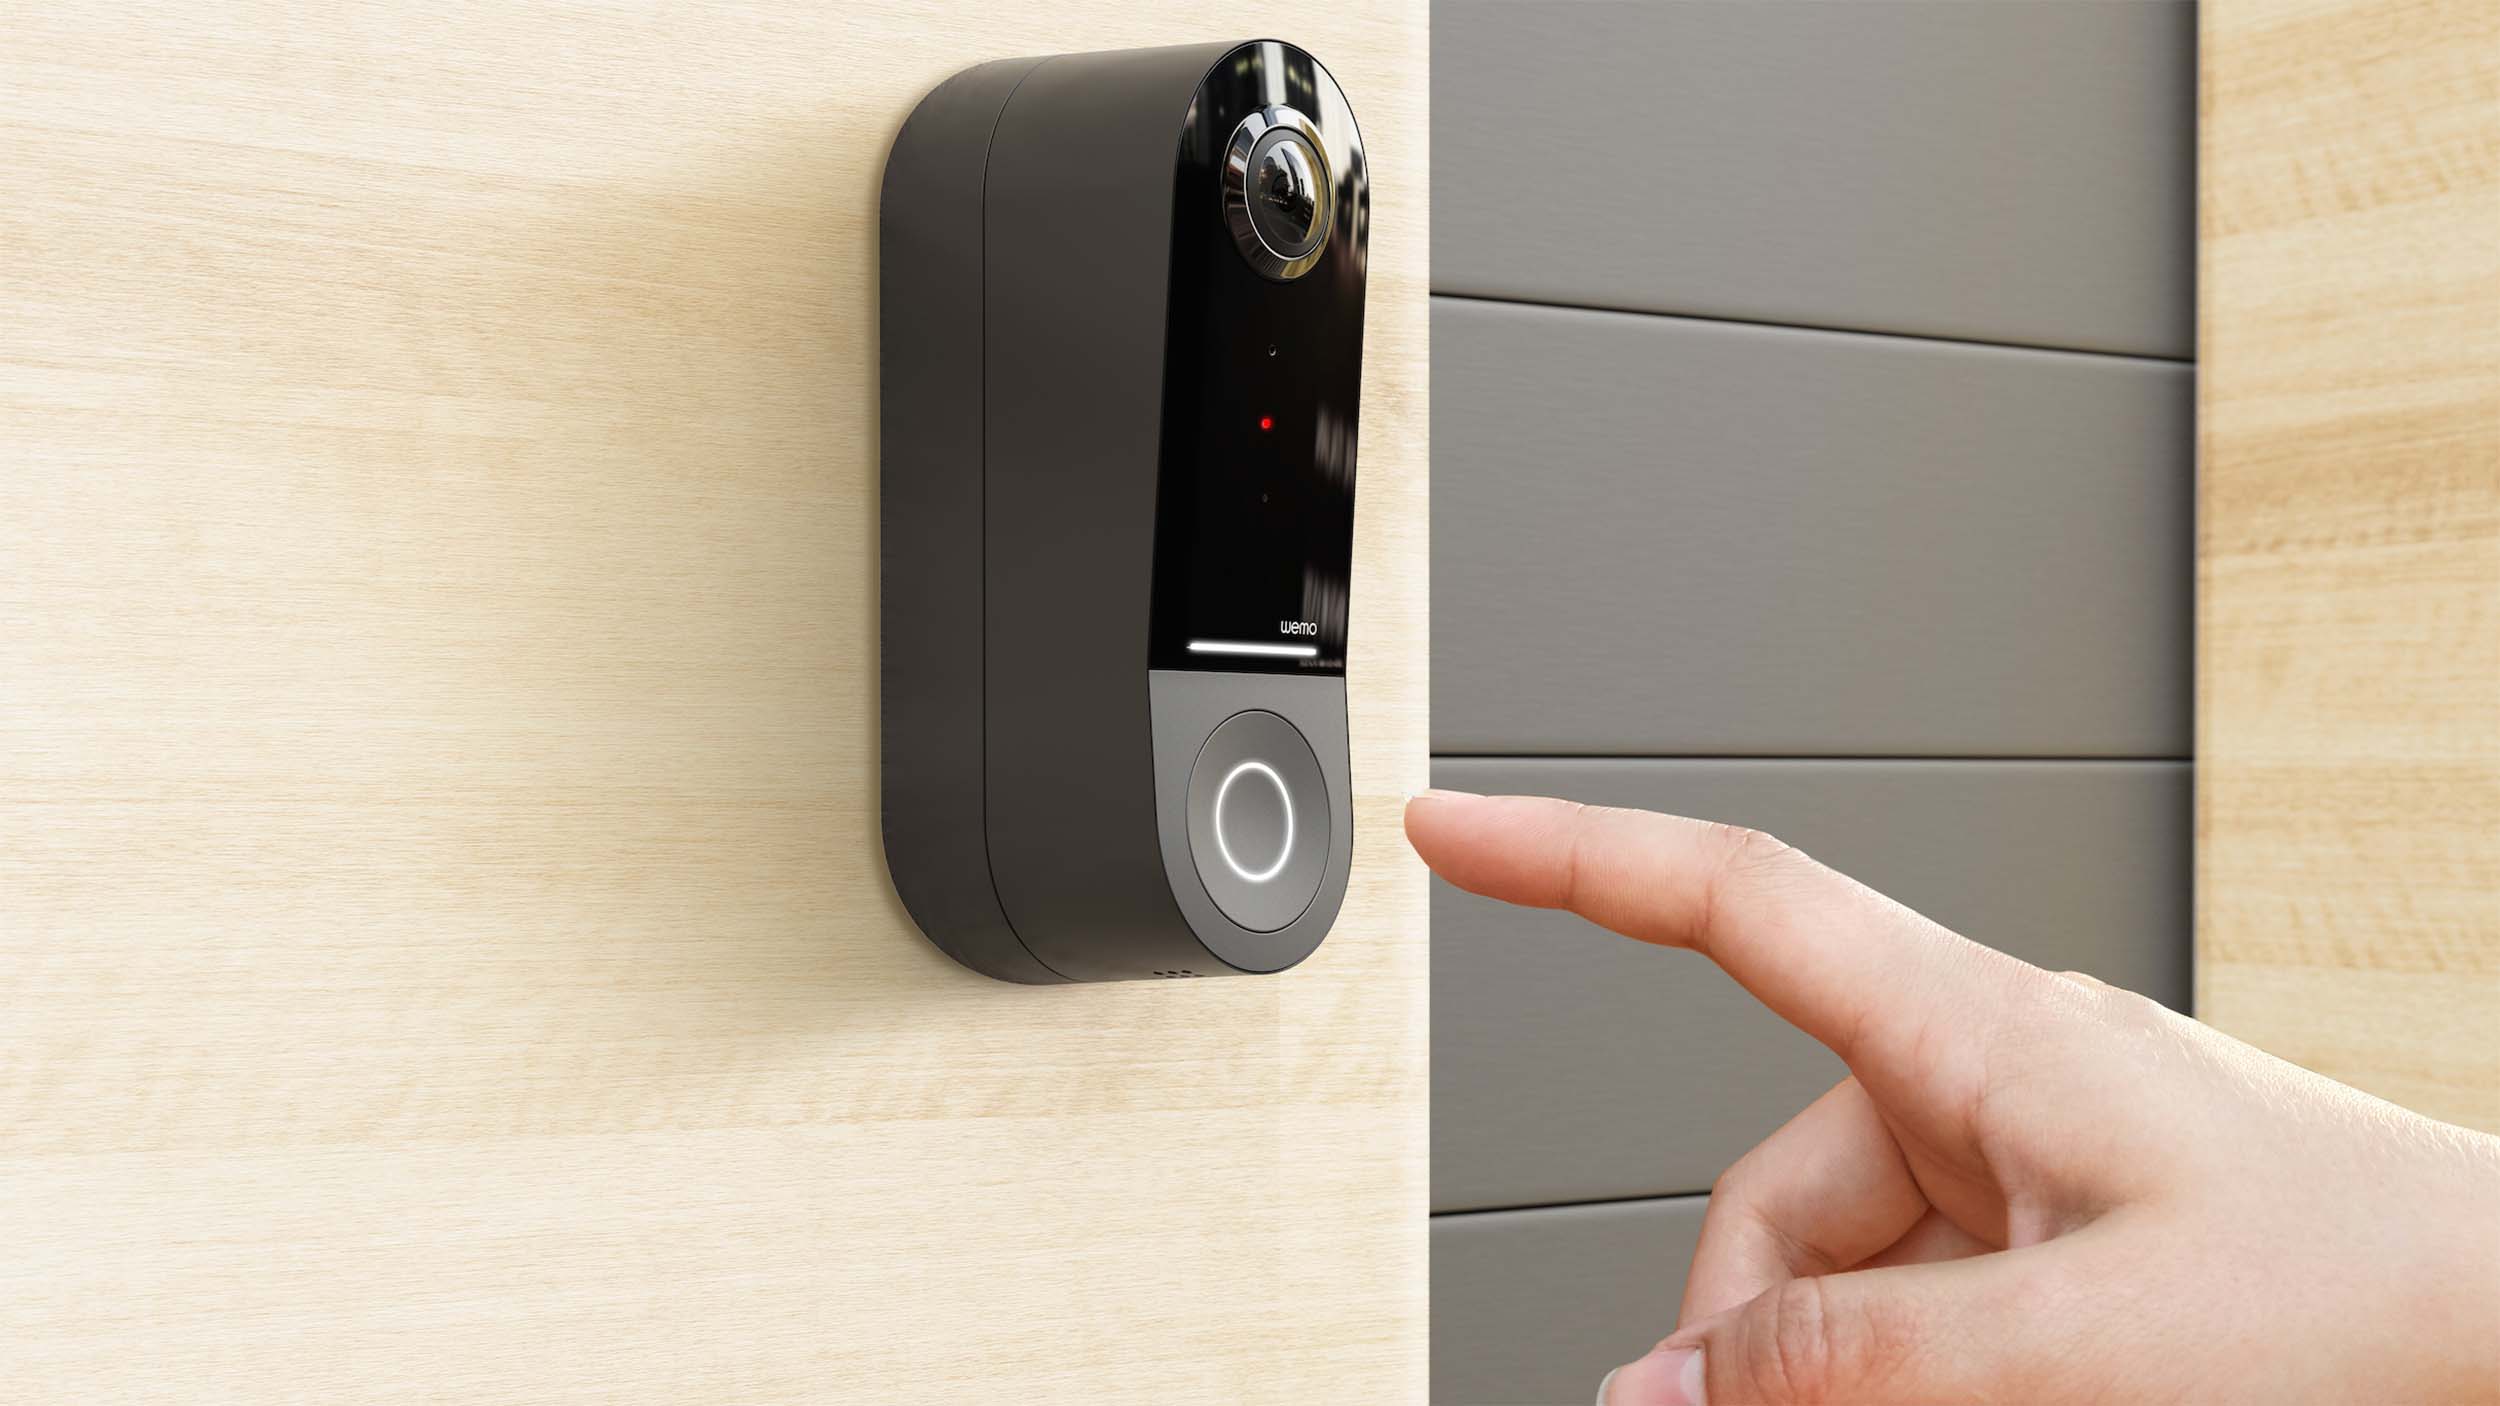 Smarter Home Video Door Bell FAQs - Enercare